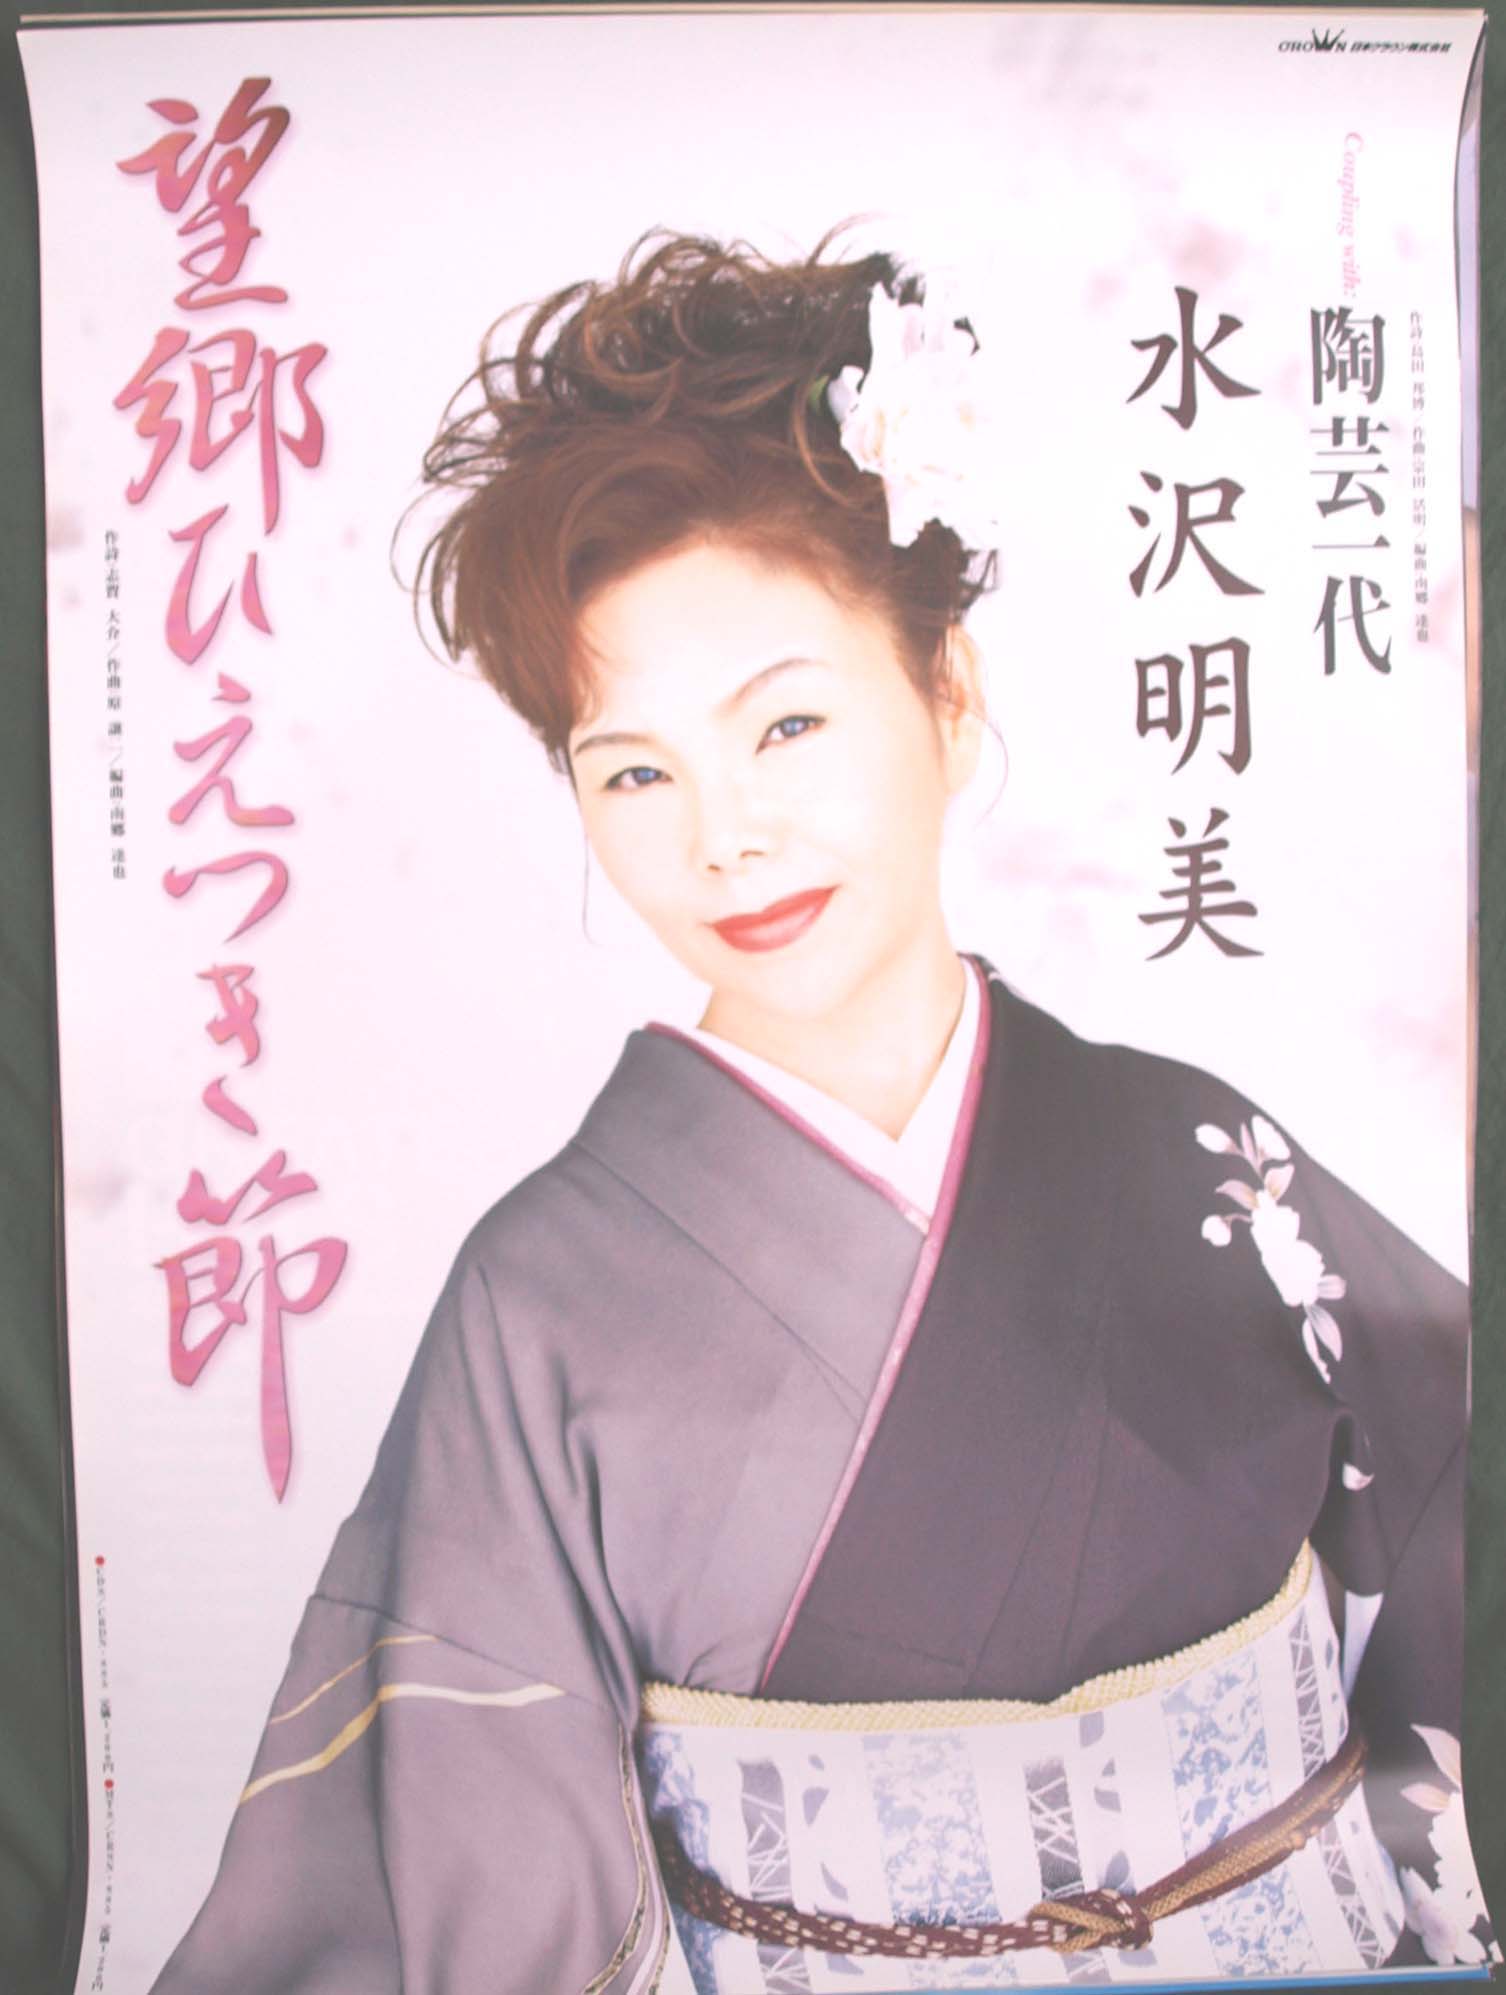 水沢明美 「望郷ひえつき節」のポスター